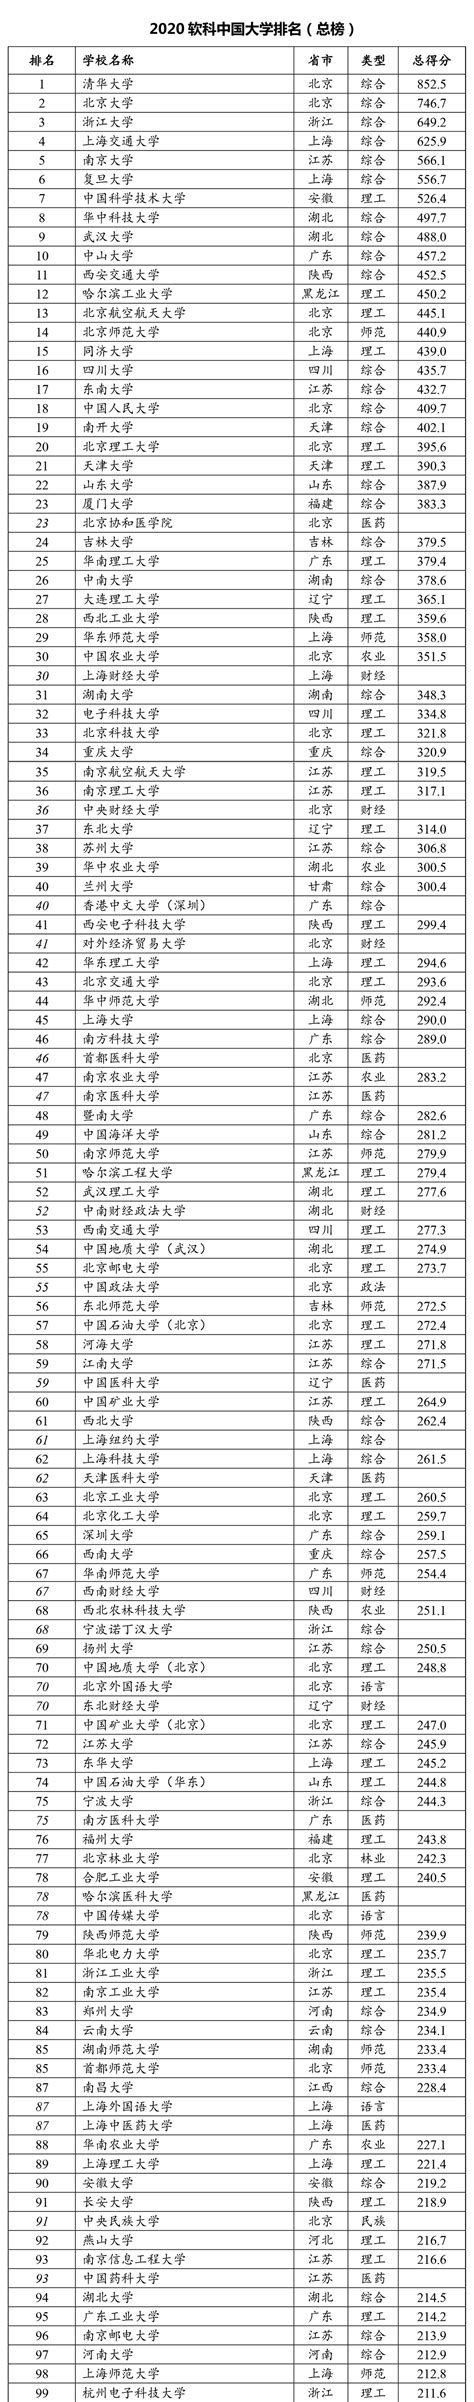 2020软科中国大学排名发布 85所双一流高校位列百强 - 国际教育最前线